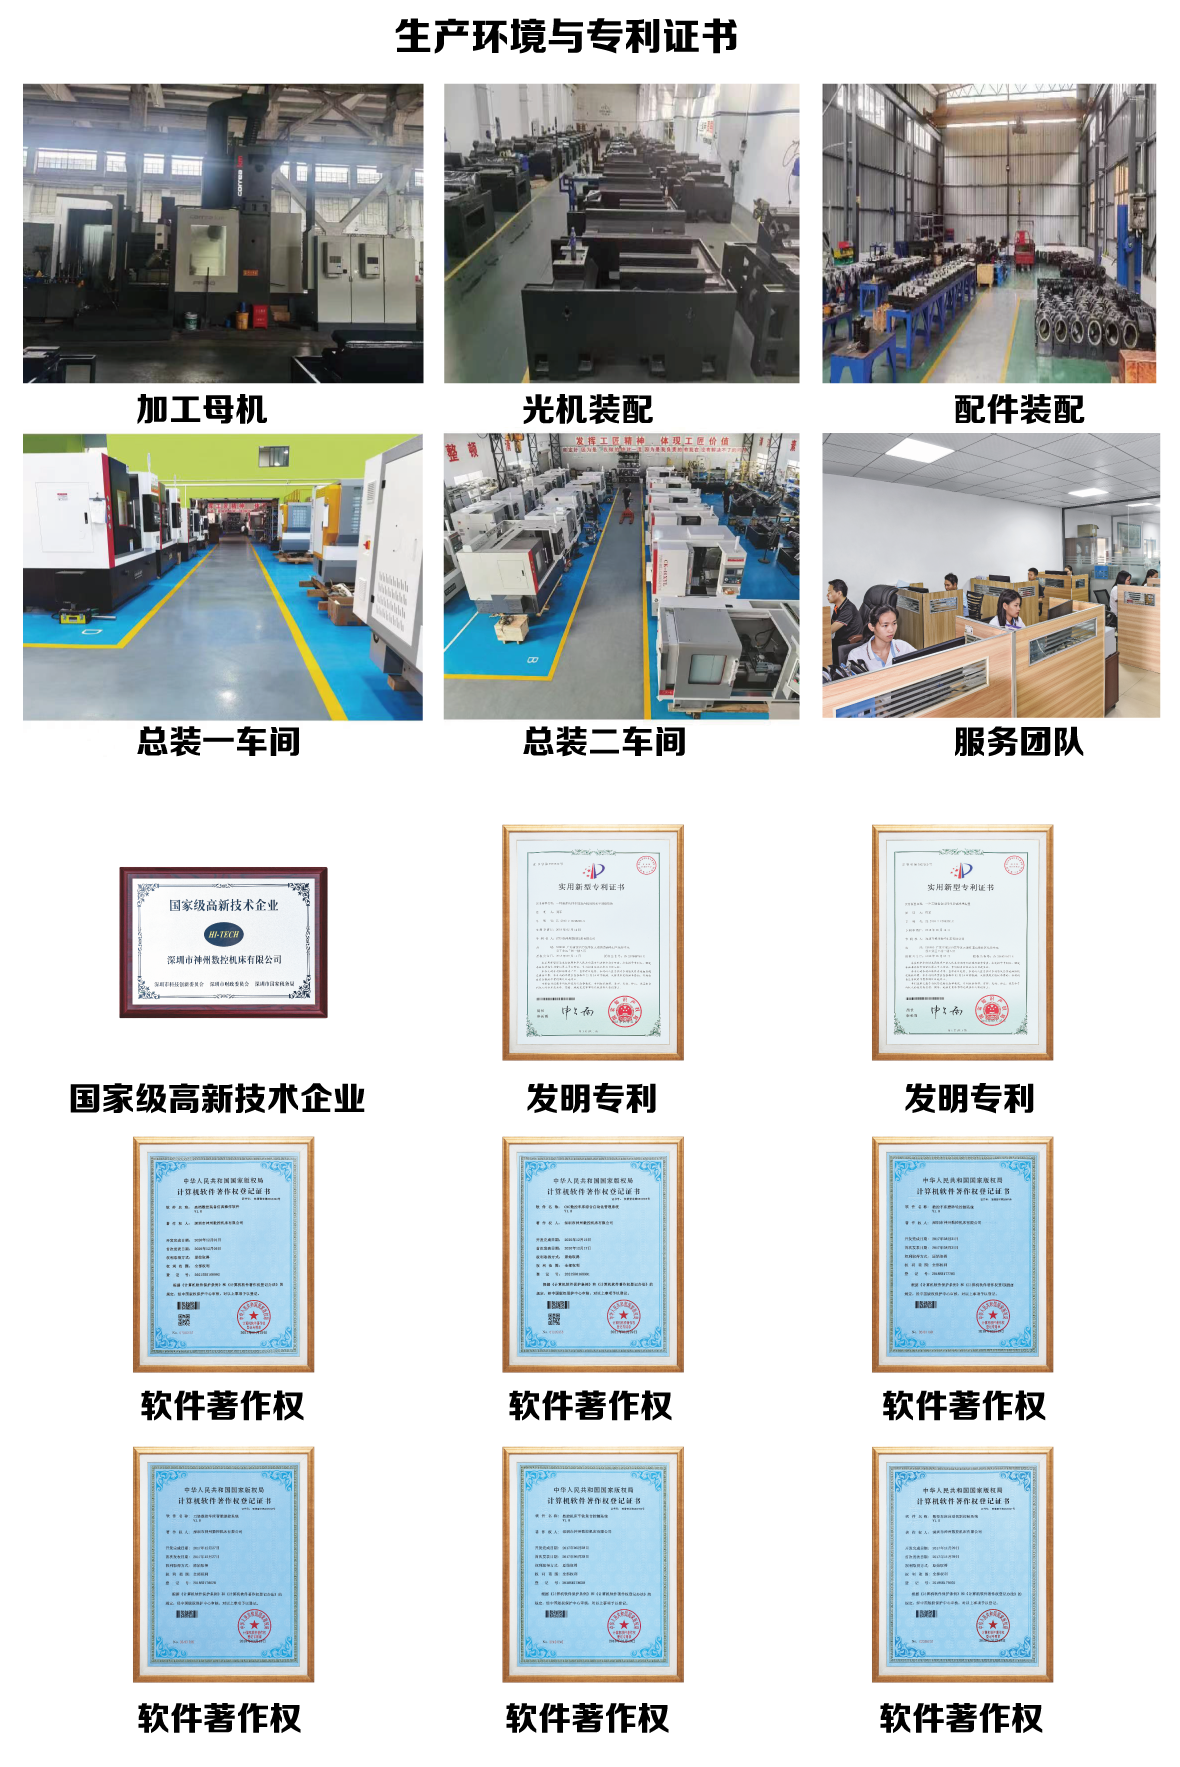 深圳新莆京app电子游戏床生产厂家